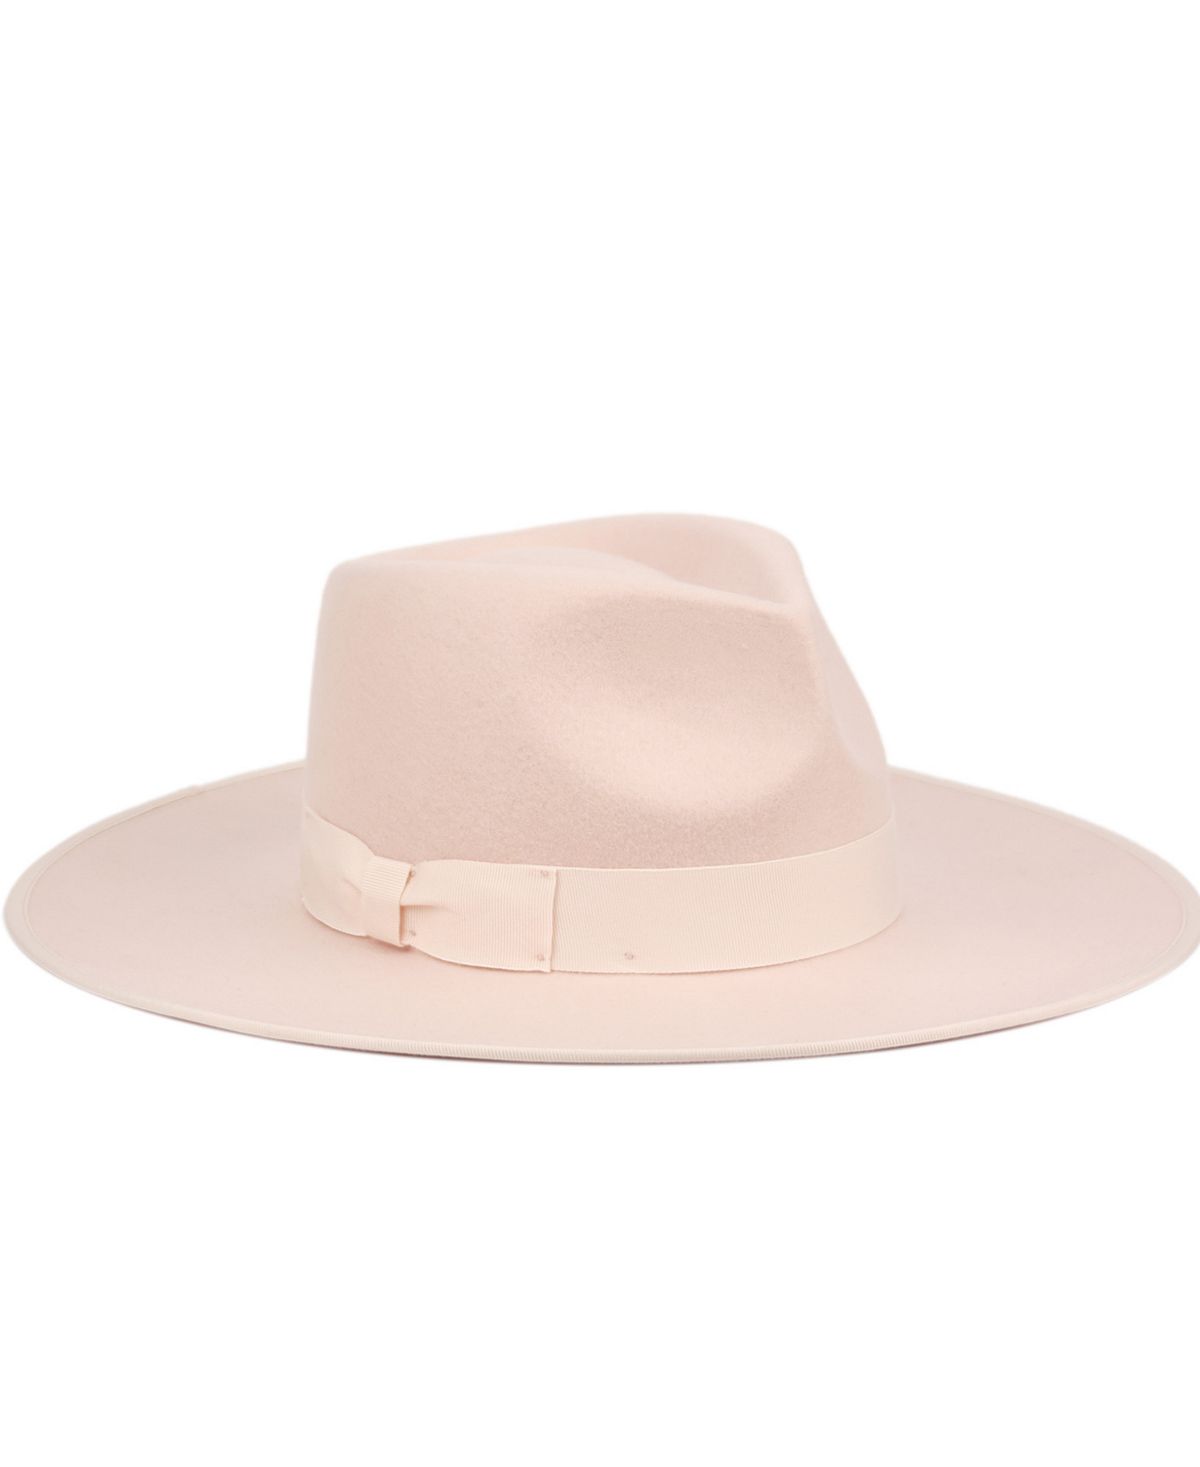 Женская фетровая шляпа Rancher Fedora с широкими полями Angela & William цена и фото